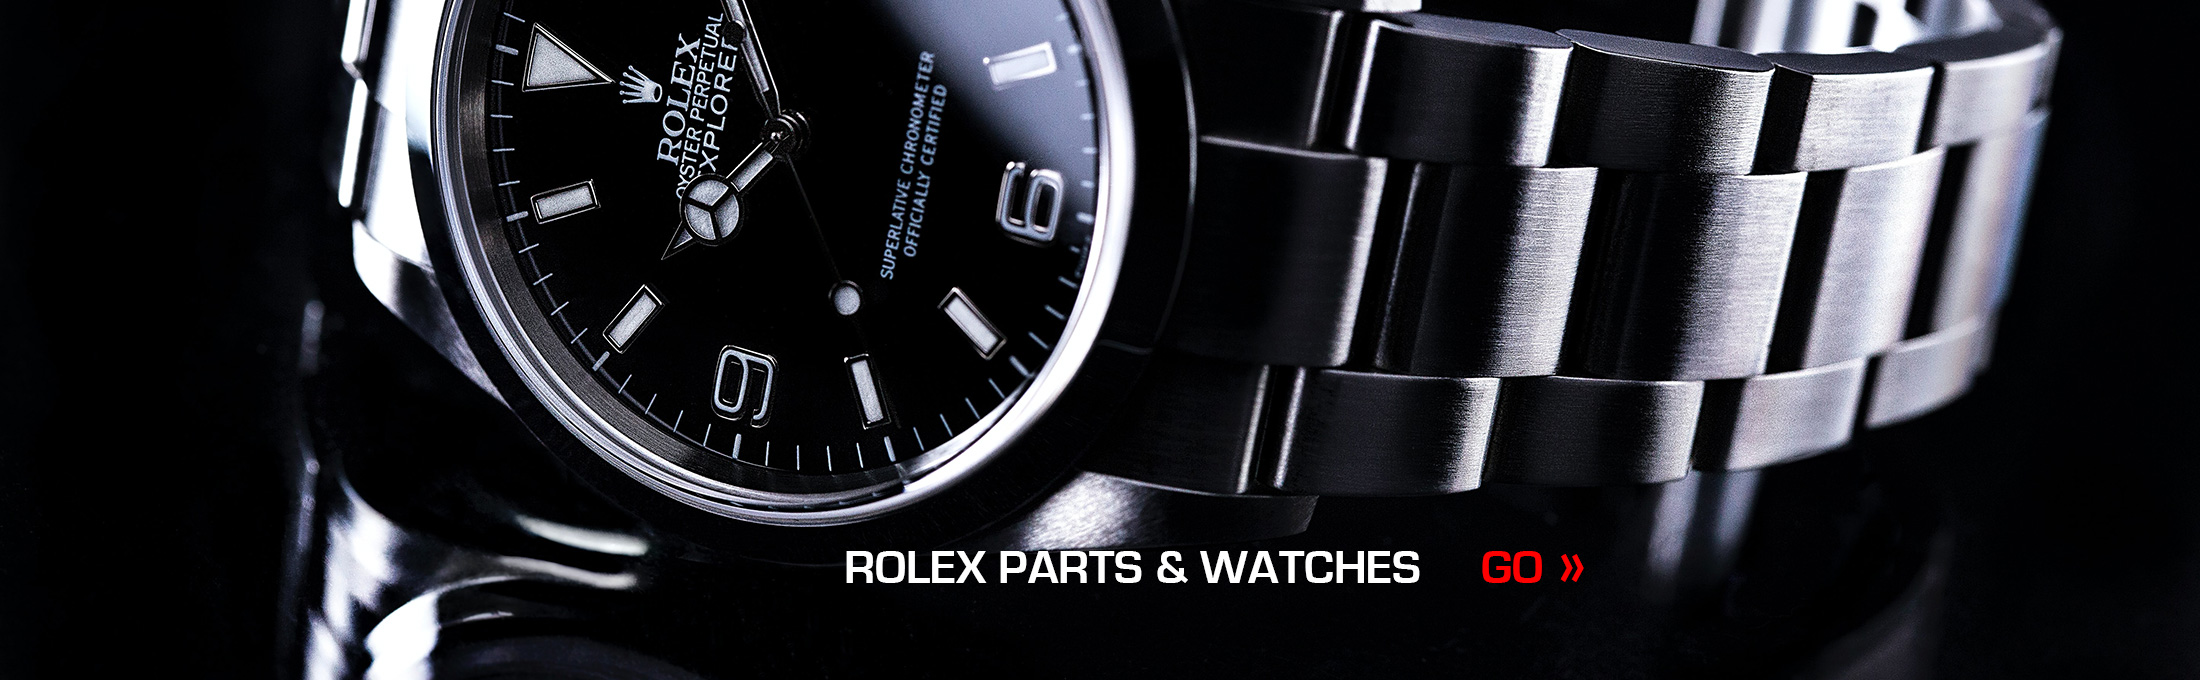 Rolex Parts & Watches